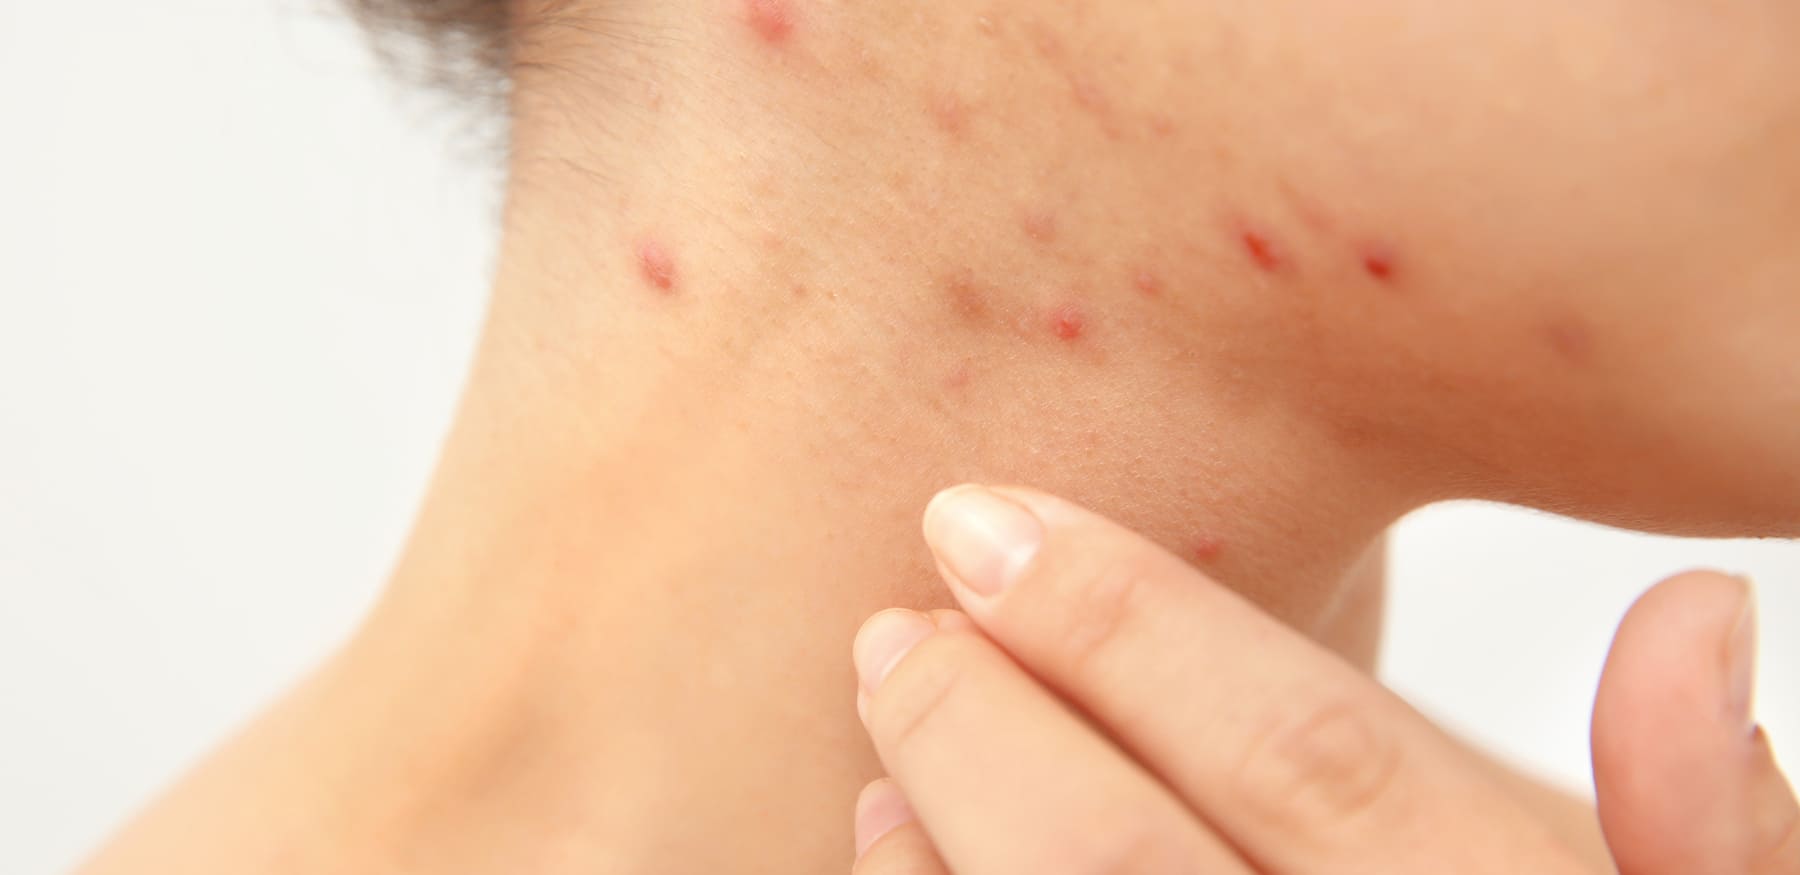 Hormonelle Akne behandeln und erkennen: 5 Tipps, die jetzt helfen